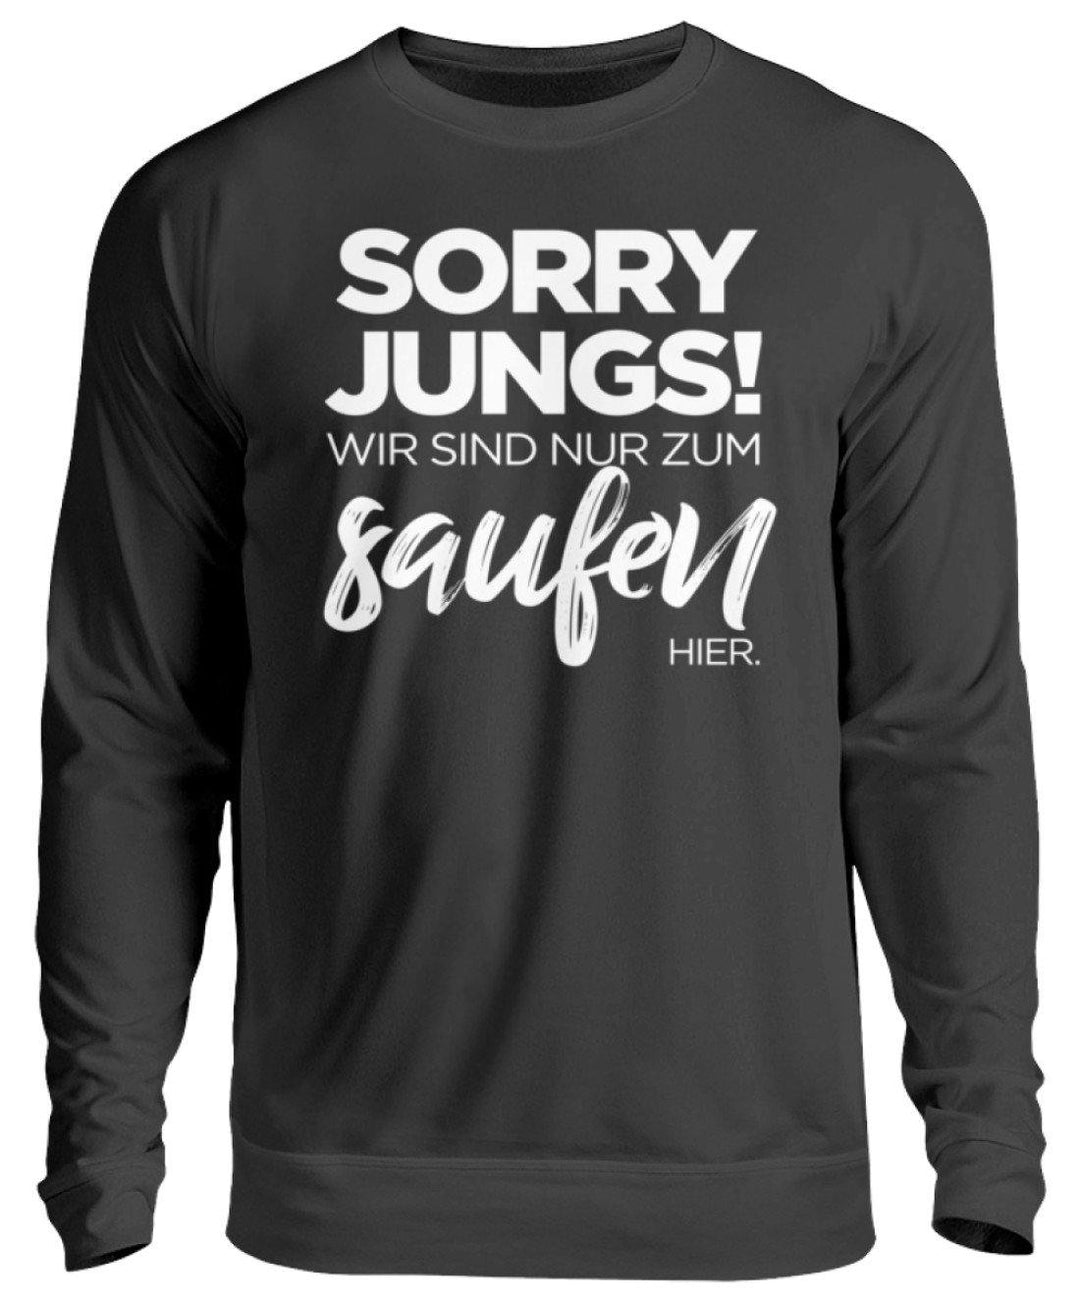 Sorry Jungs! Nur zum saufen hier.  - Unisex Pullover - Words on Shirts